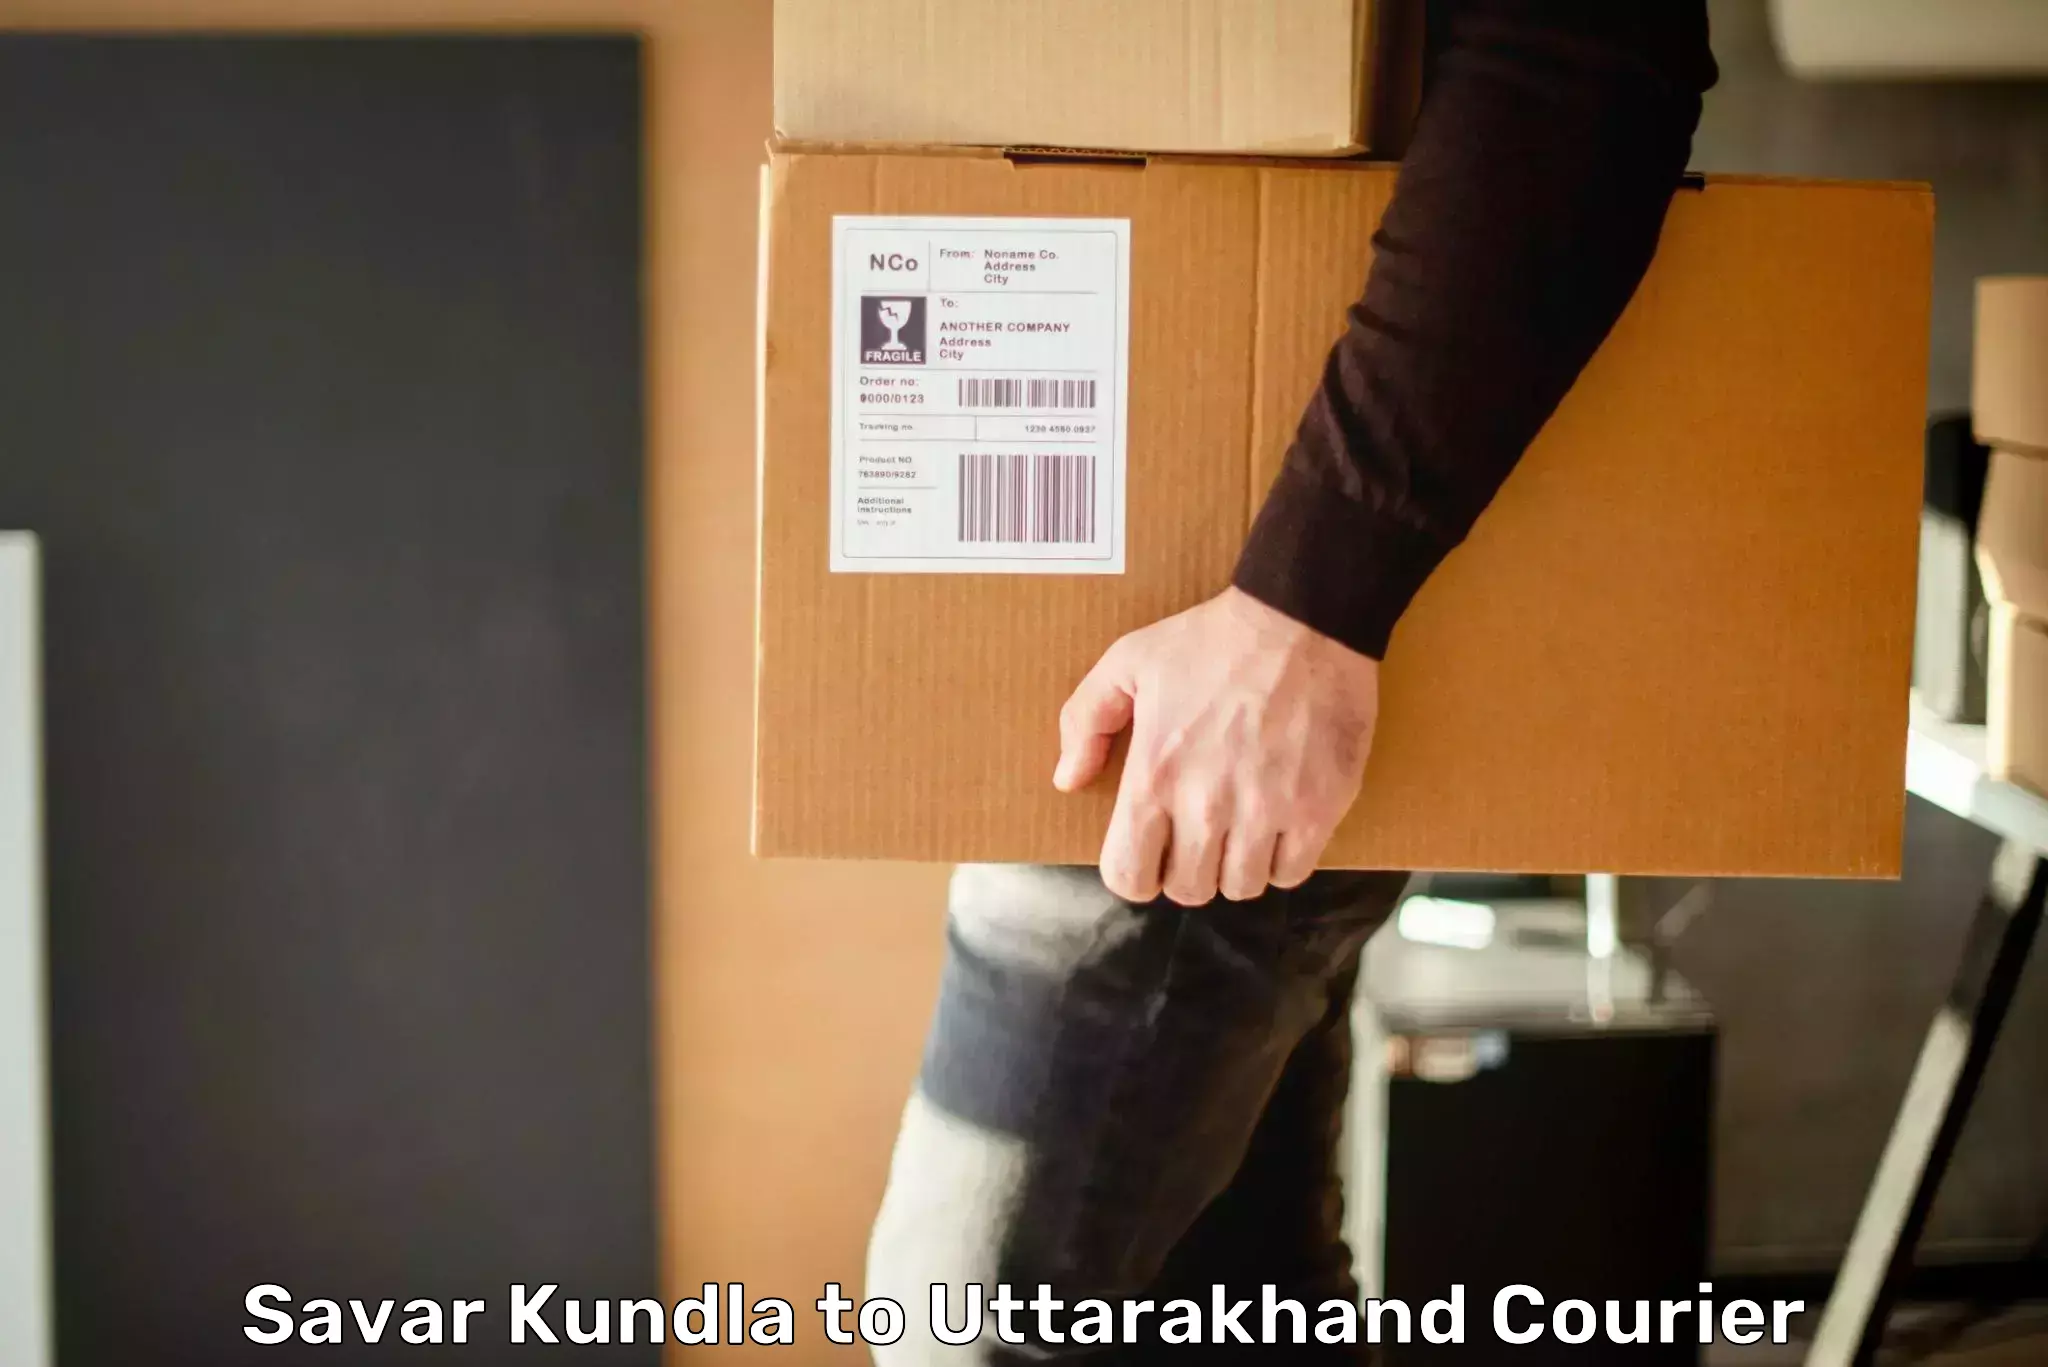 Expedited shipping methods Savar Kundla to Uttarakhand